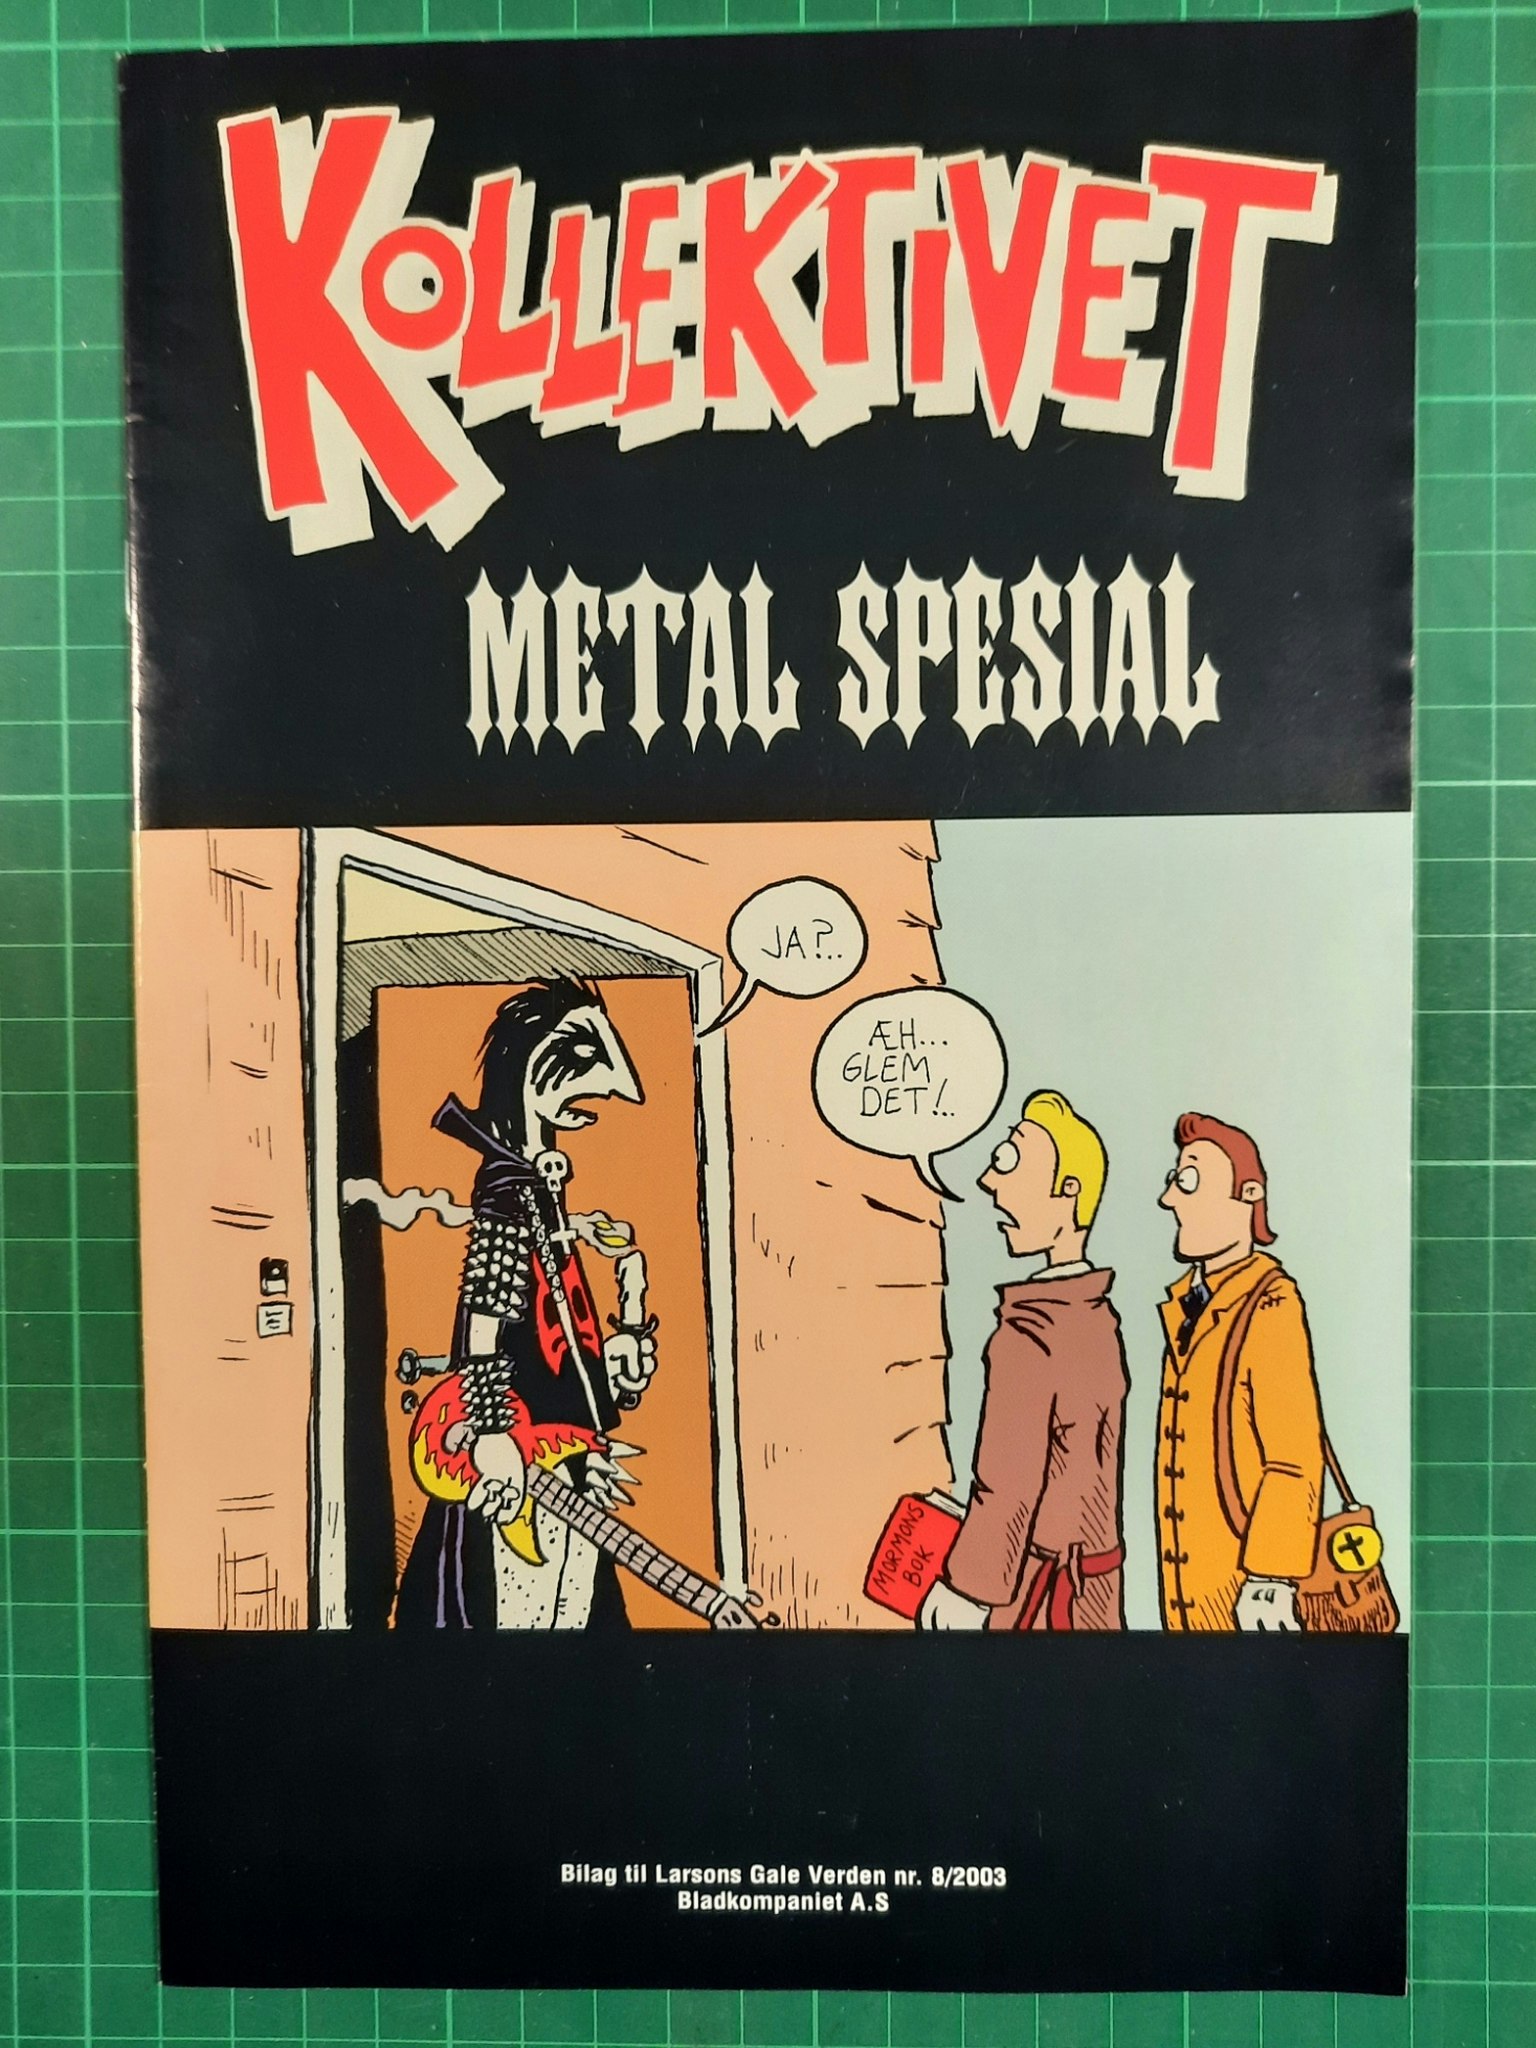 Kollektivet Metal spesial